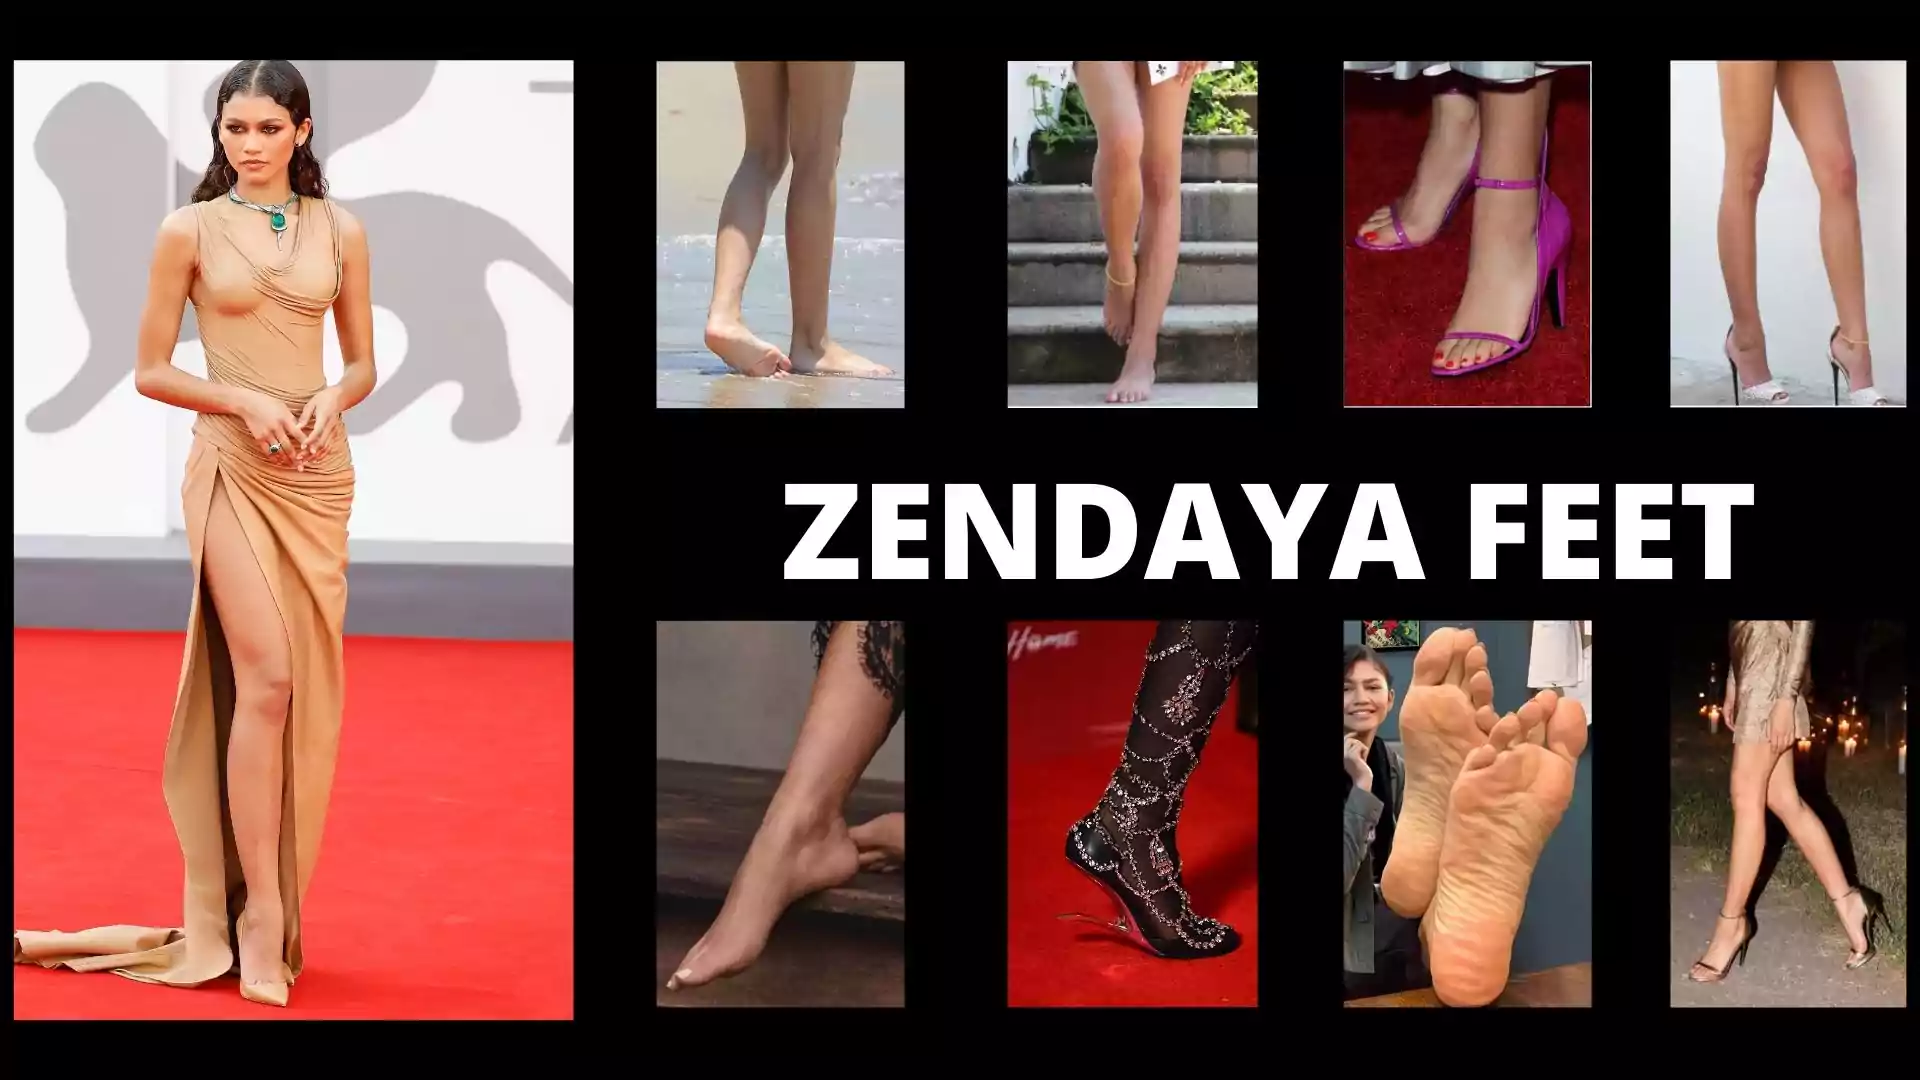 Zendaya Feet Images, wallpaper